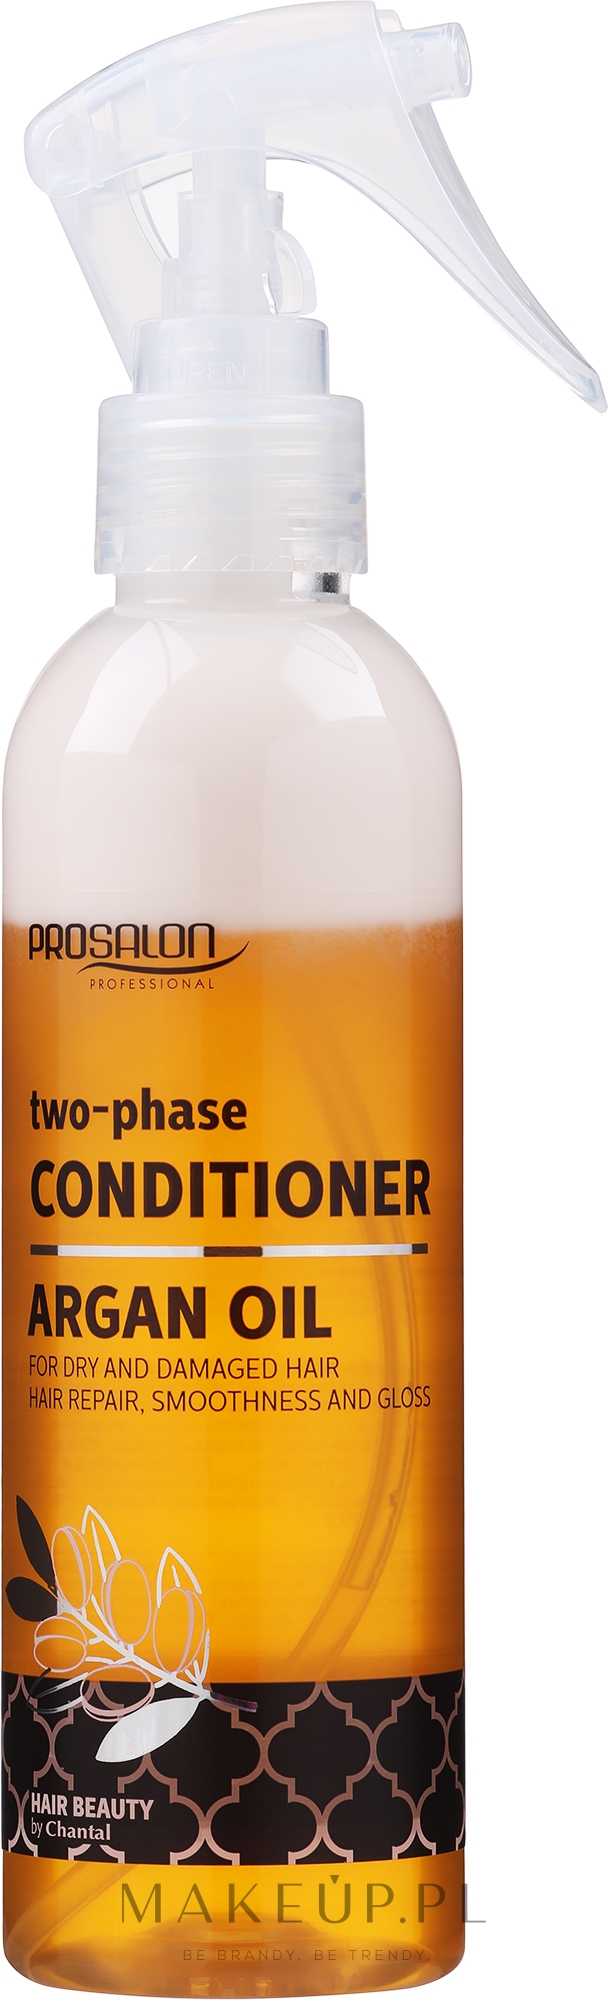 prosalon argan oil odżywka do włosów